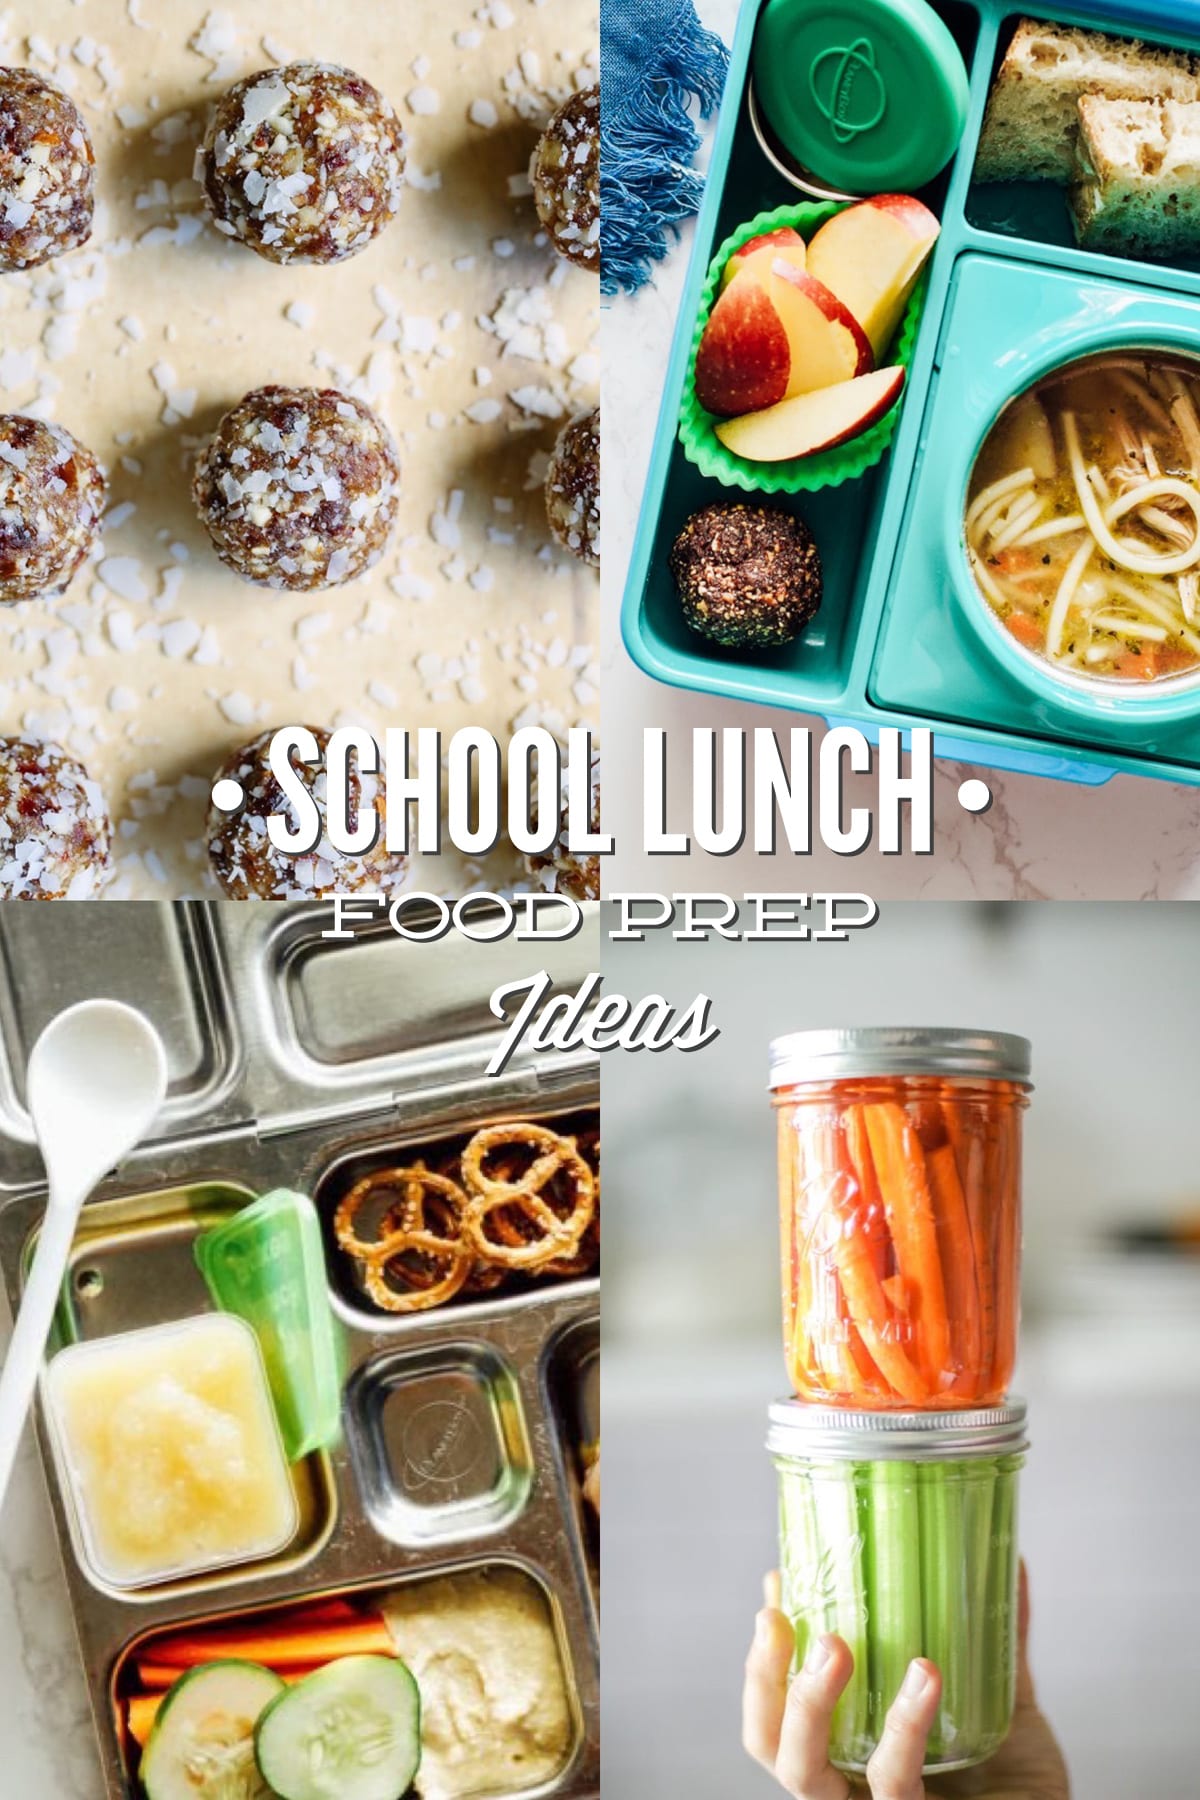 School Lunch Food Prep Ideas